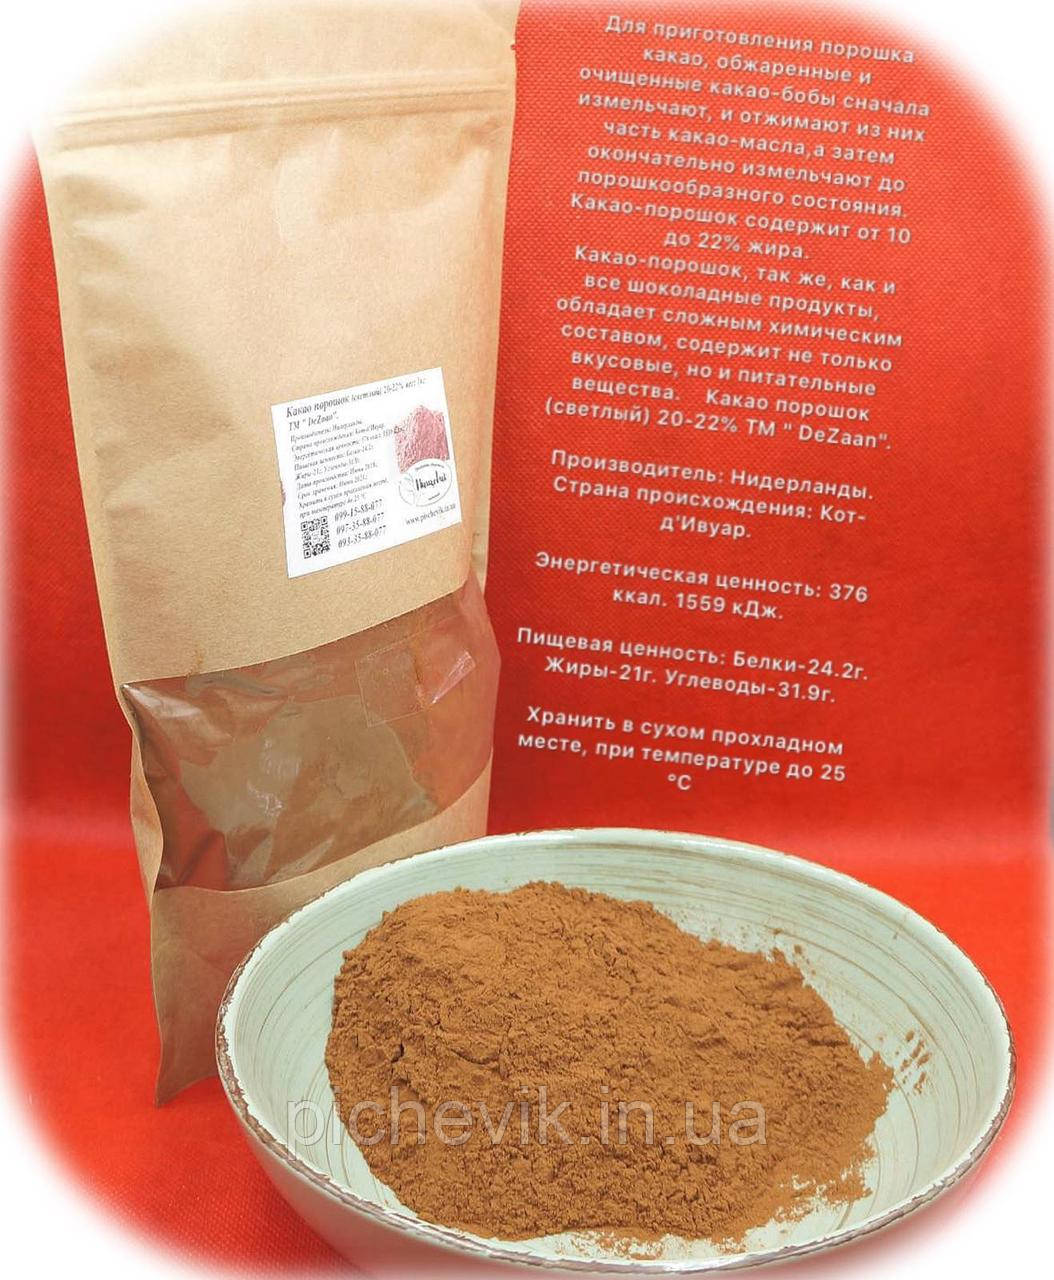 Какао порошок світлий 20-22% (Нідерланди) ТМ DeZaan вага: 500 грамів